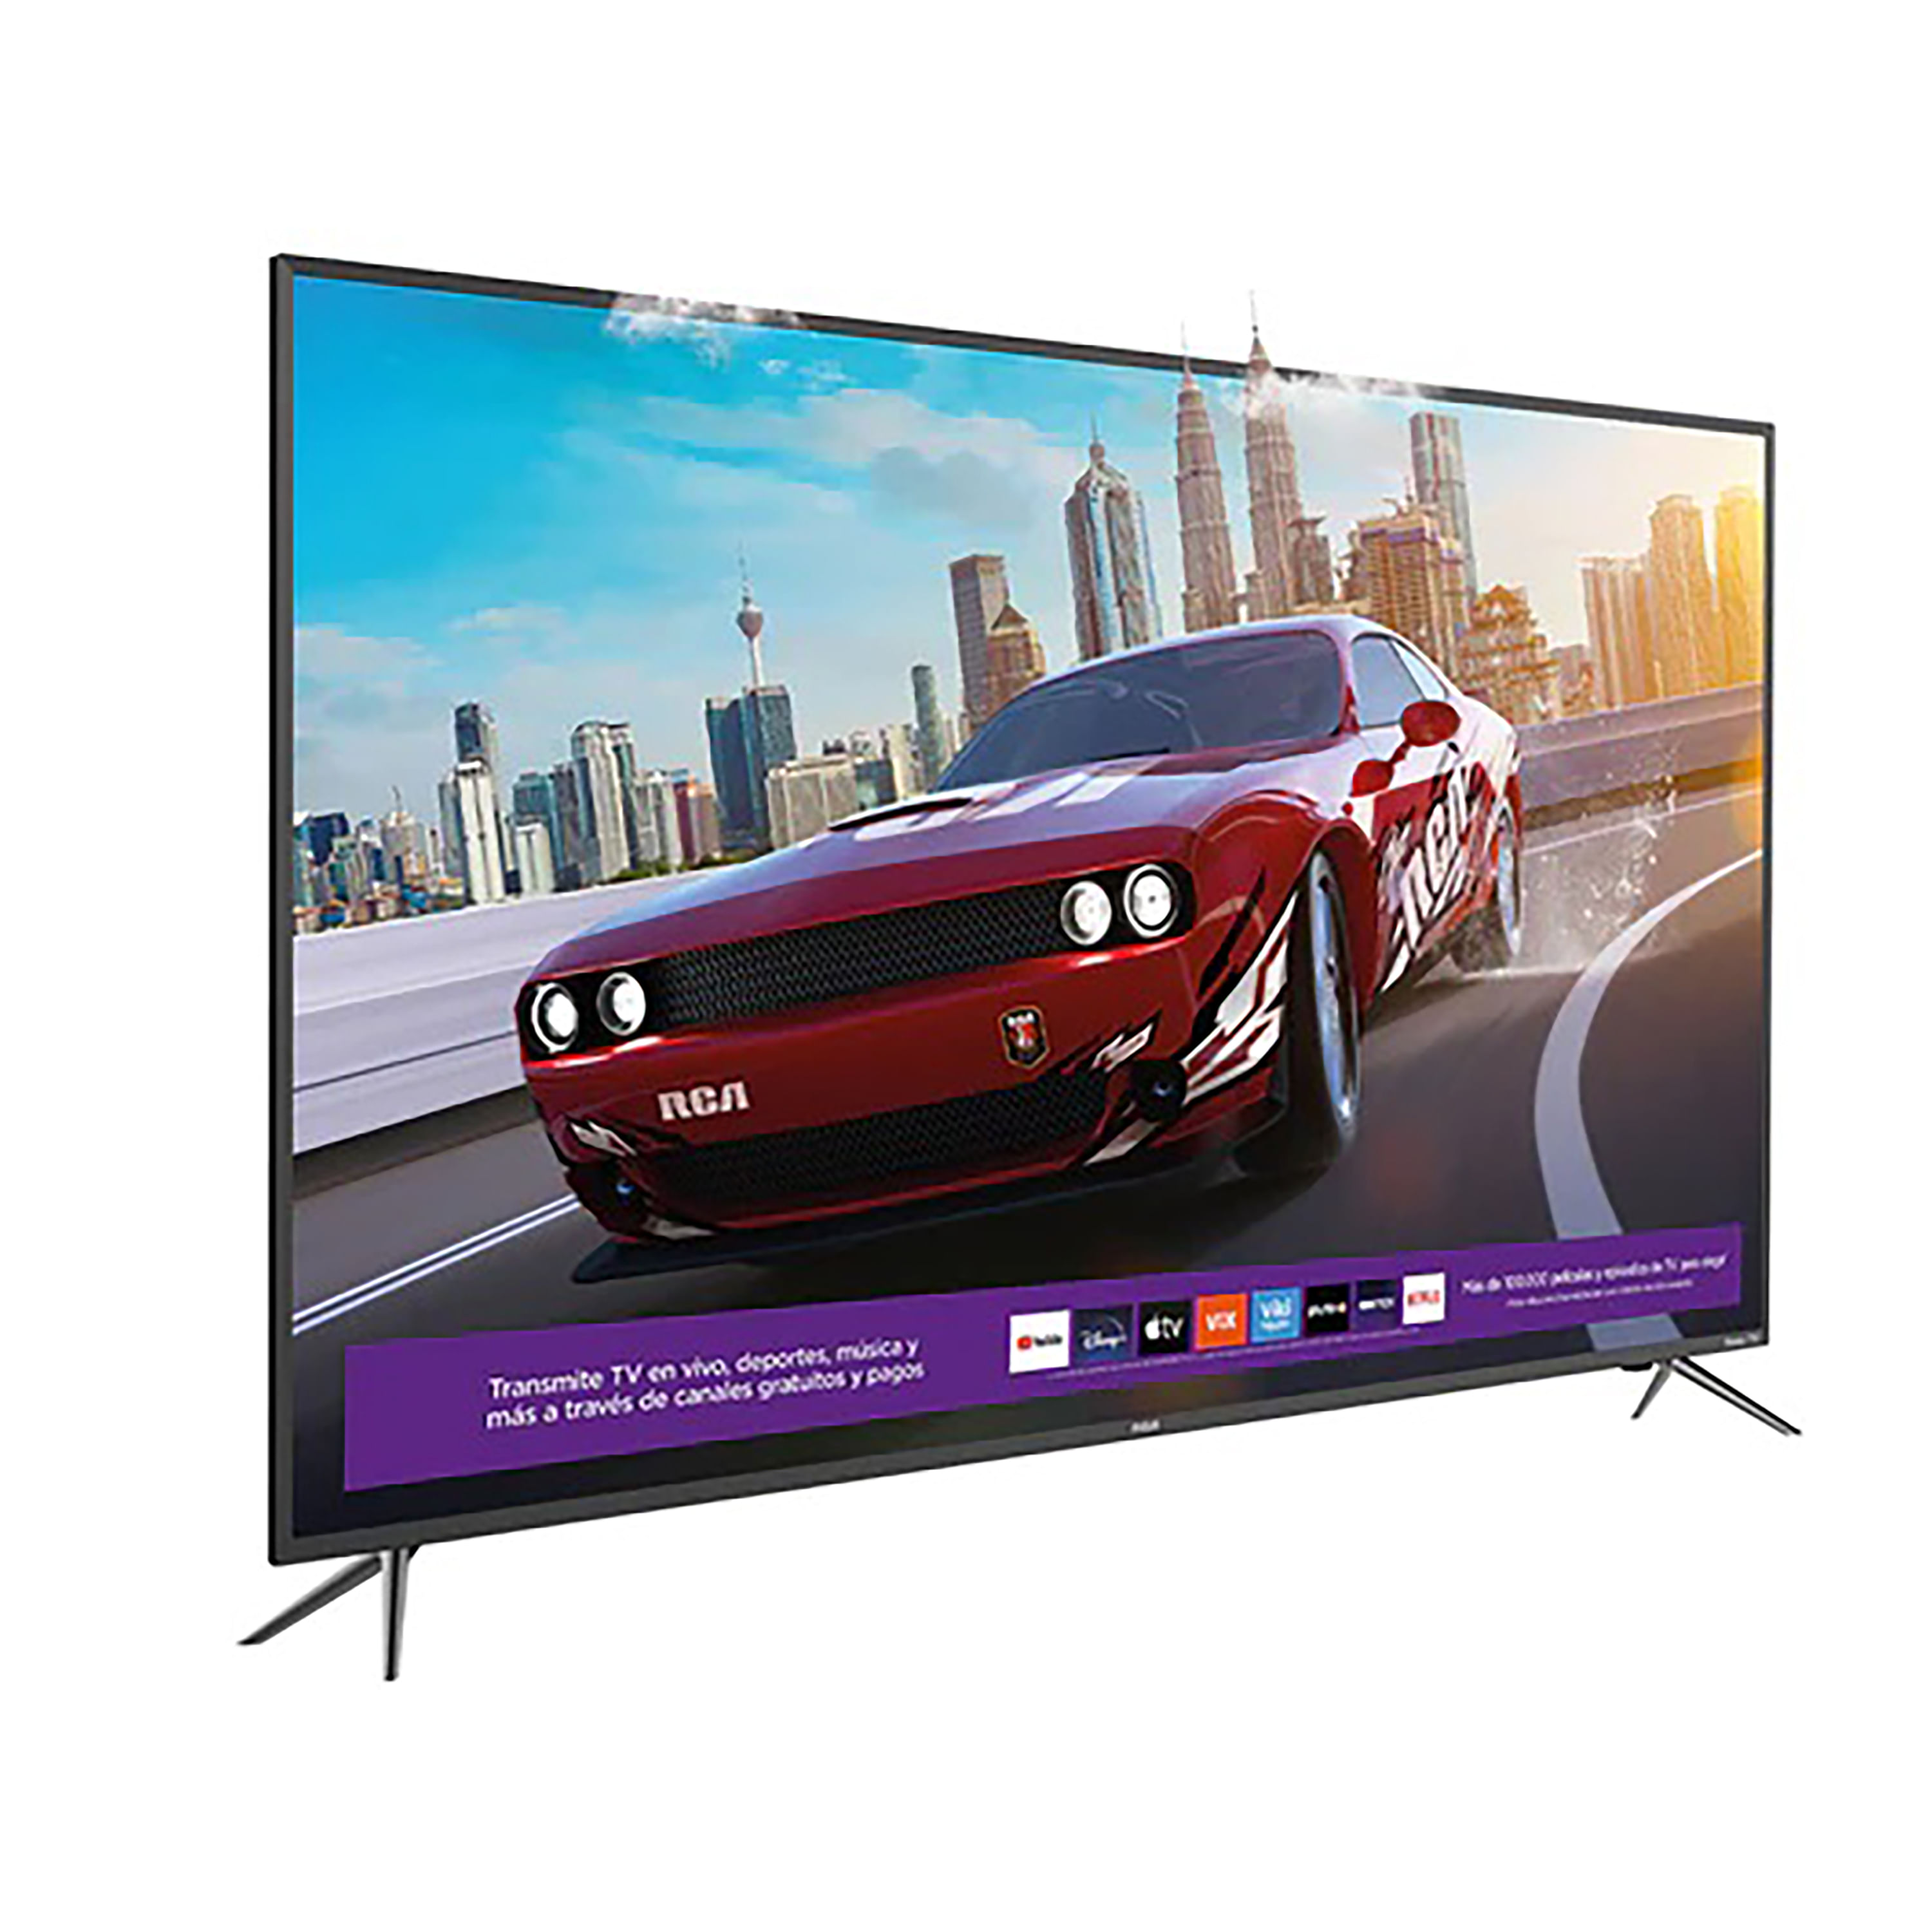 Comprar Pantalla Smart TV 4K Samsung Led De 55 Pulgadas Modelo: UN55AU7000, Walmart Guatemala - Maxi Despensa